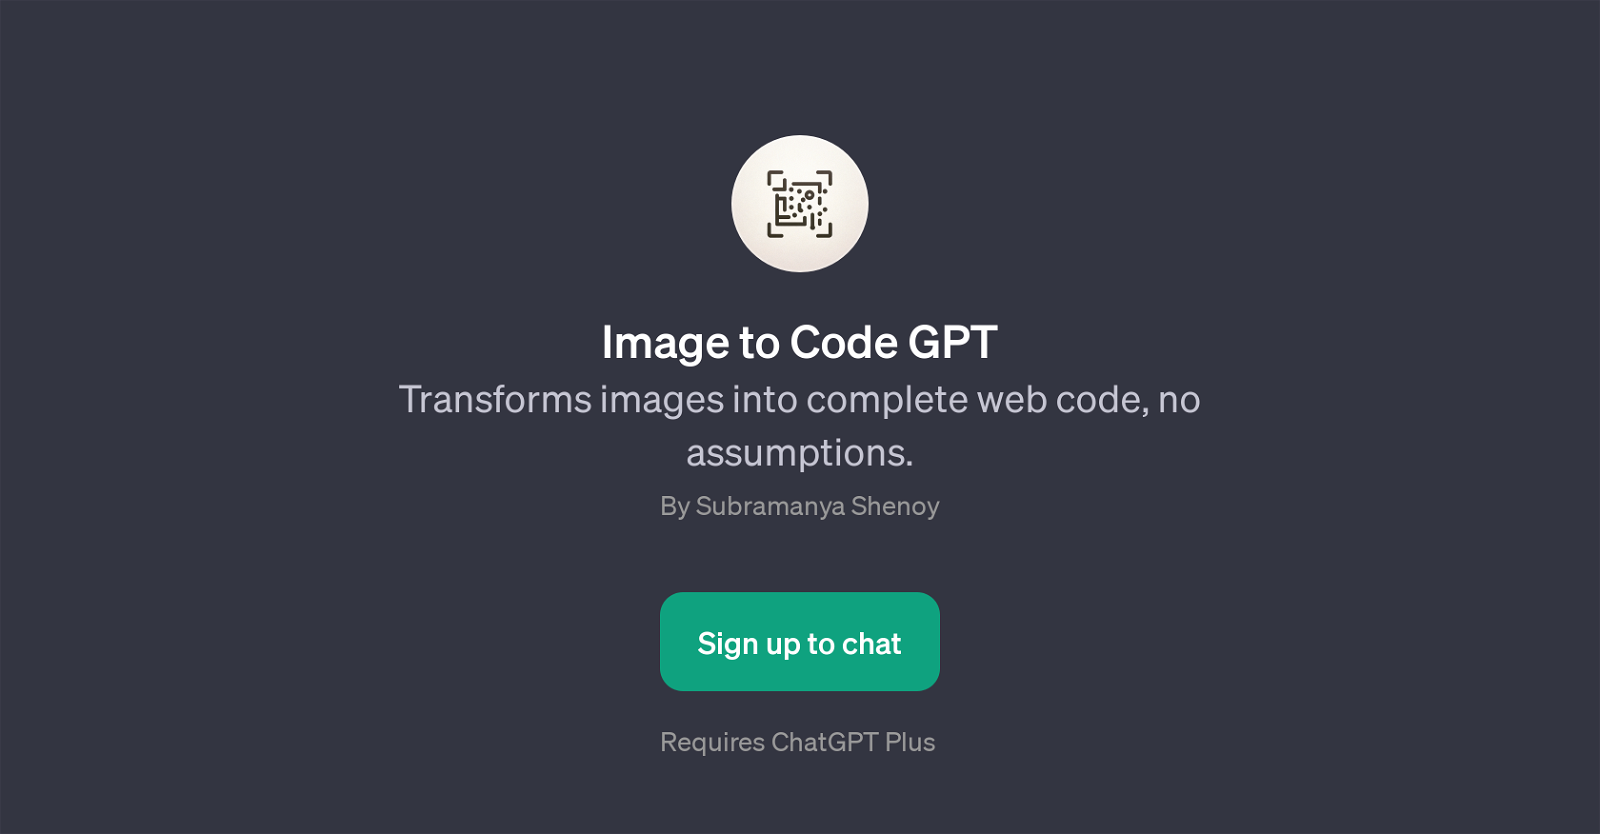 Image to Code GPT website